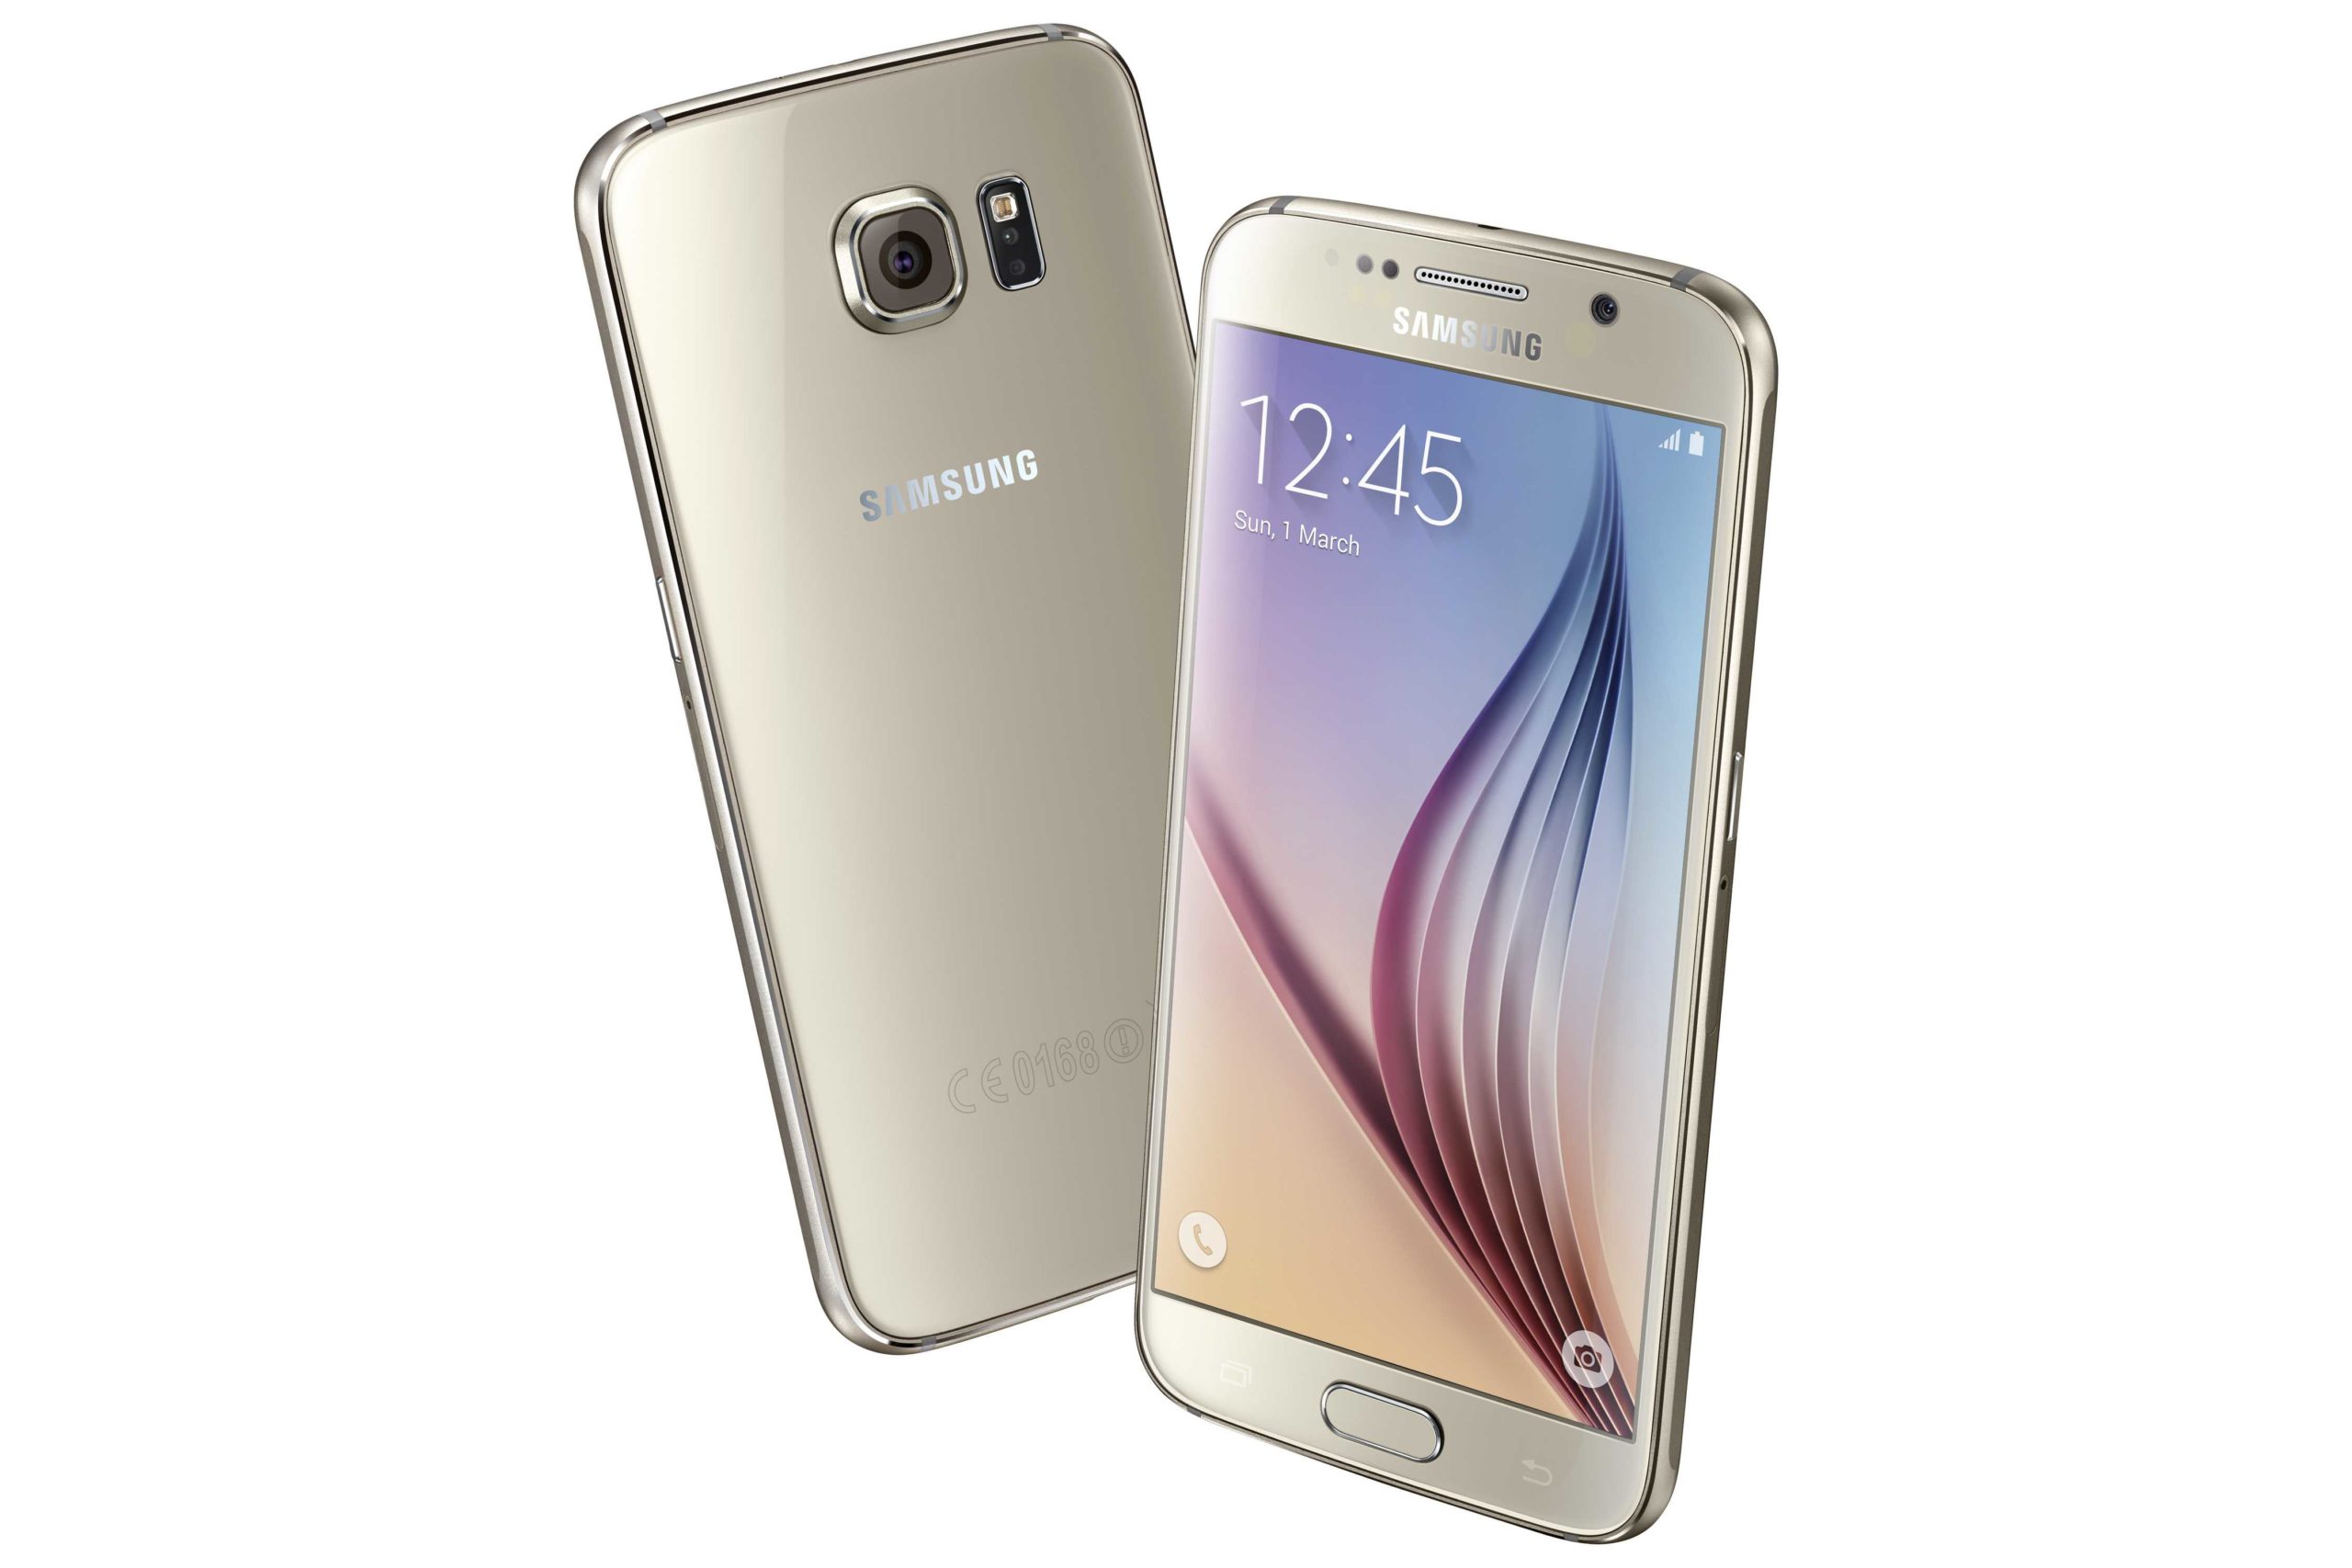 Σε λίγες ώρες λήγει ο διαγωνισμός με δώρο ένα Samsung Galaxy S6 από το enikos.gr